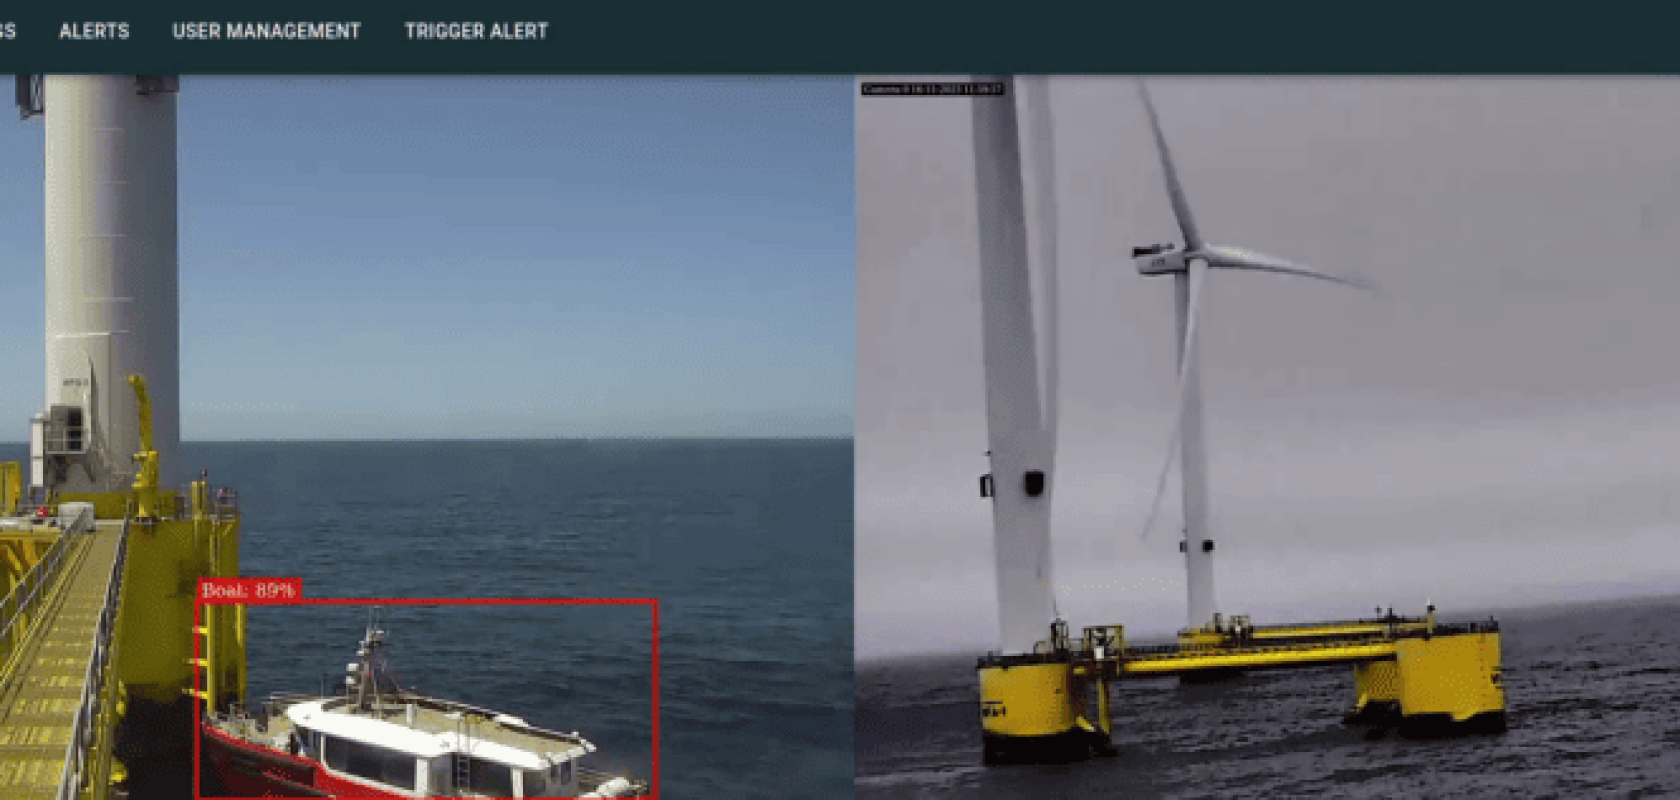 AI person detection wind farm